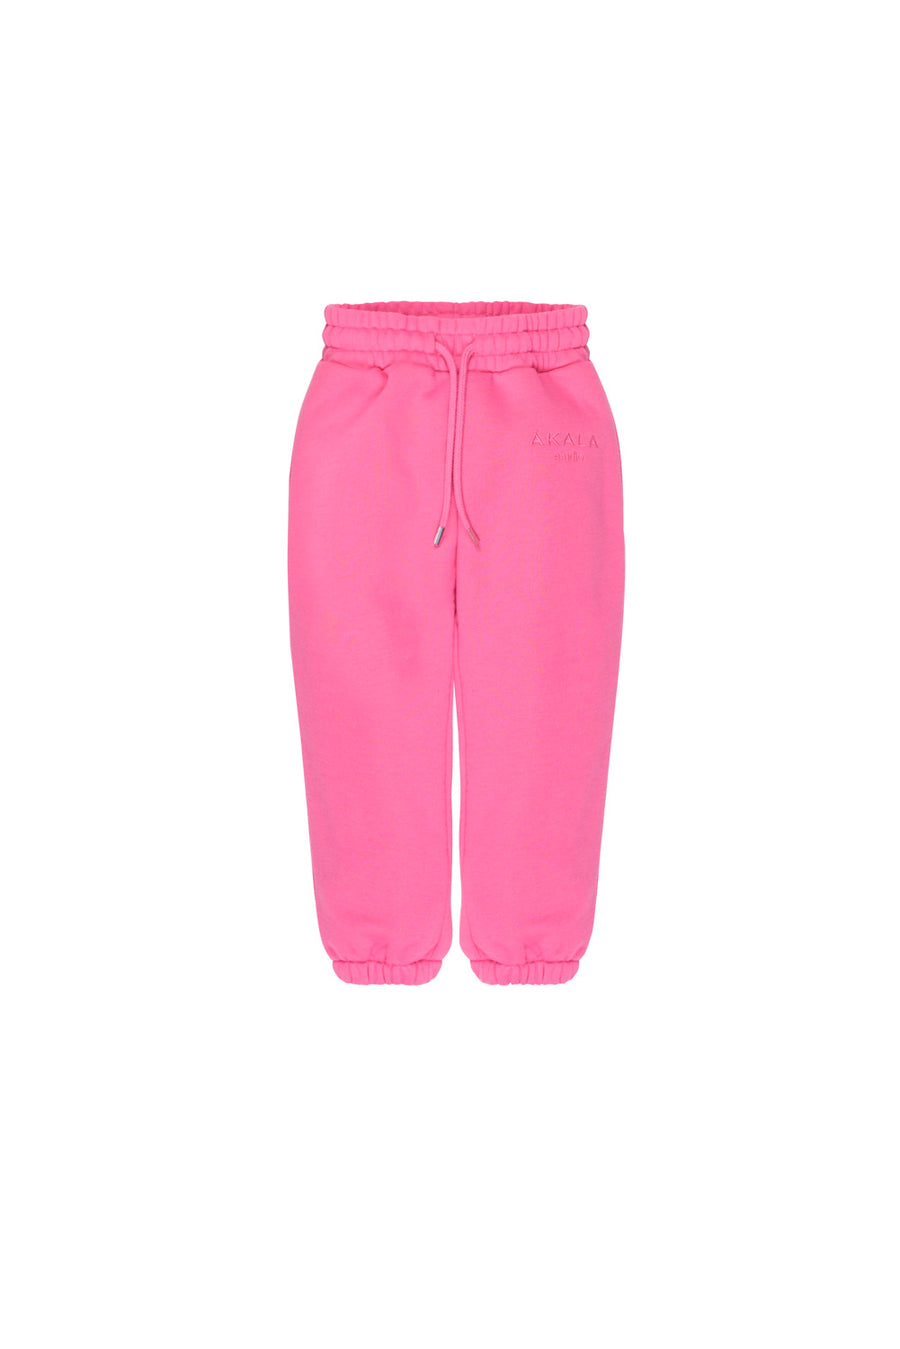 Pantalones Pink niña